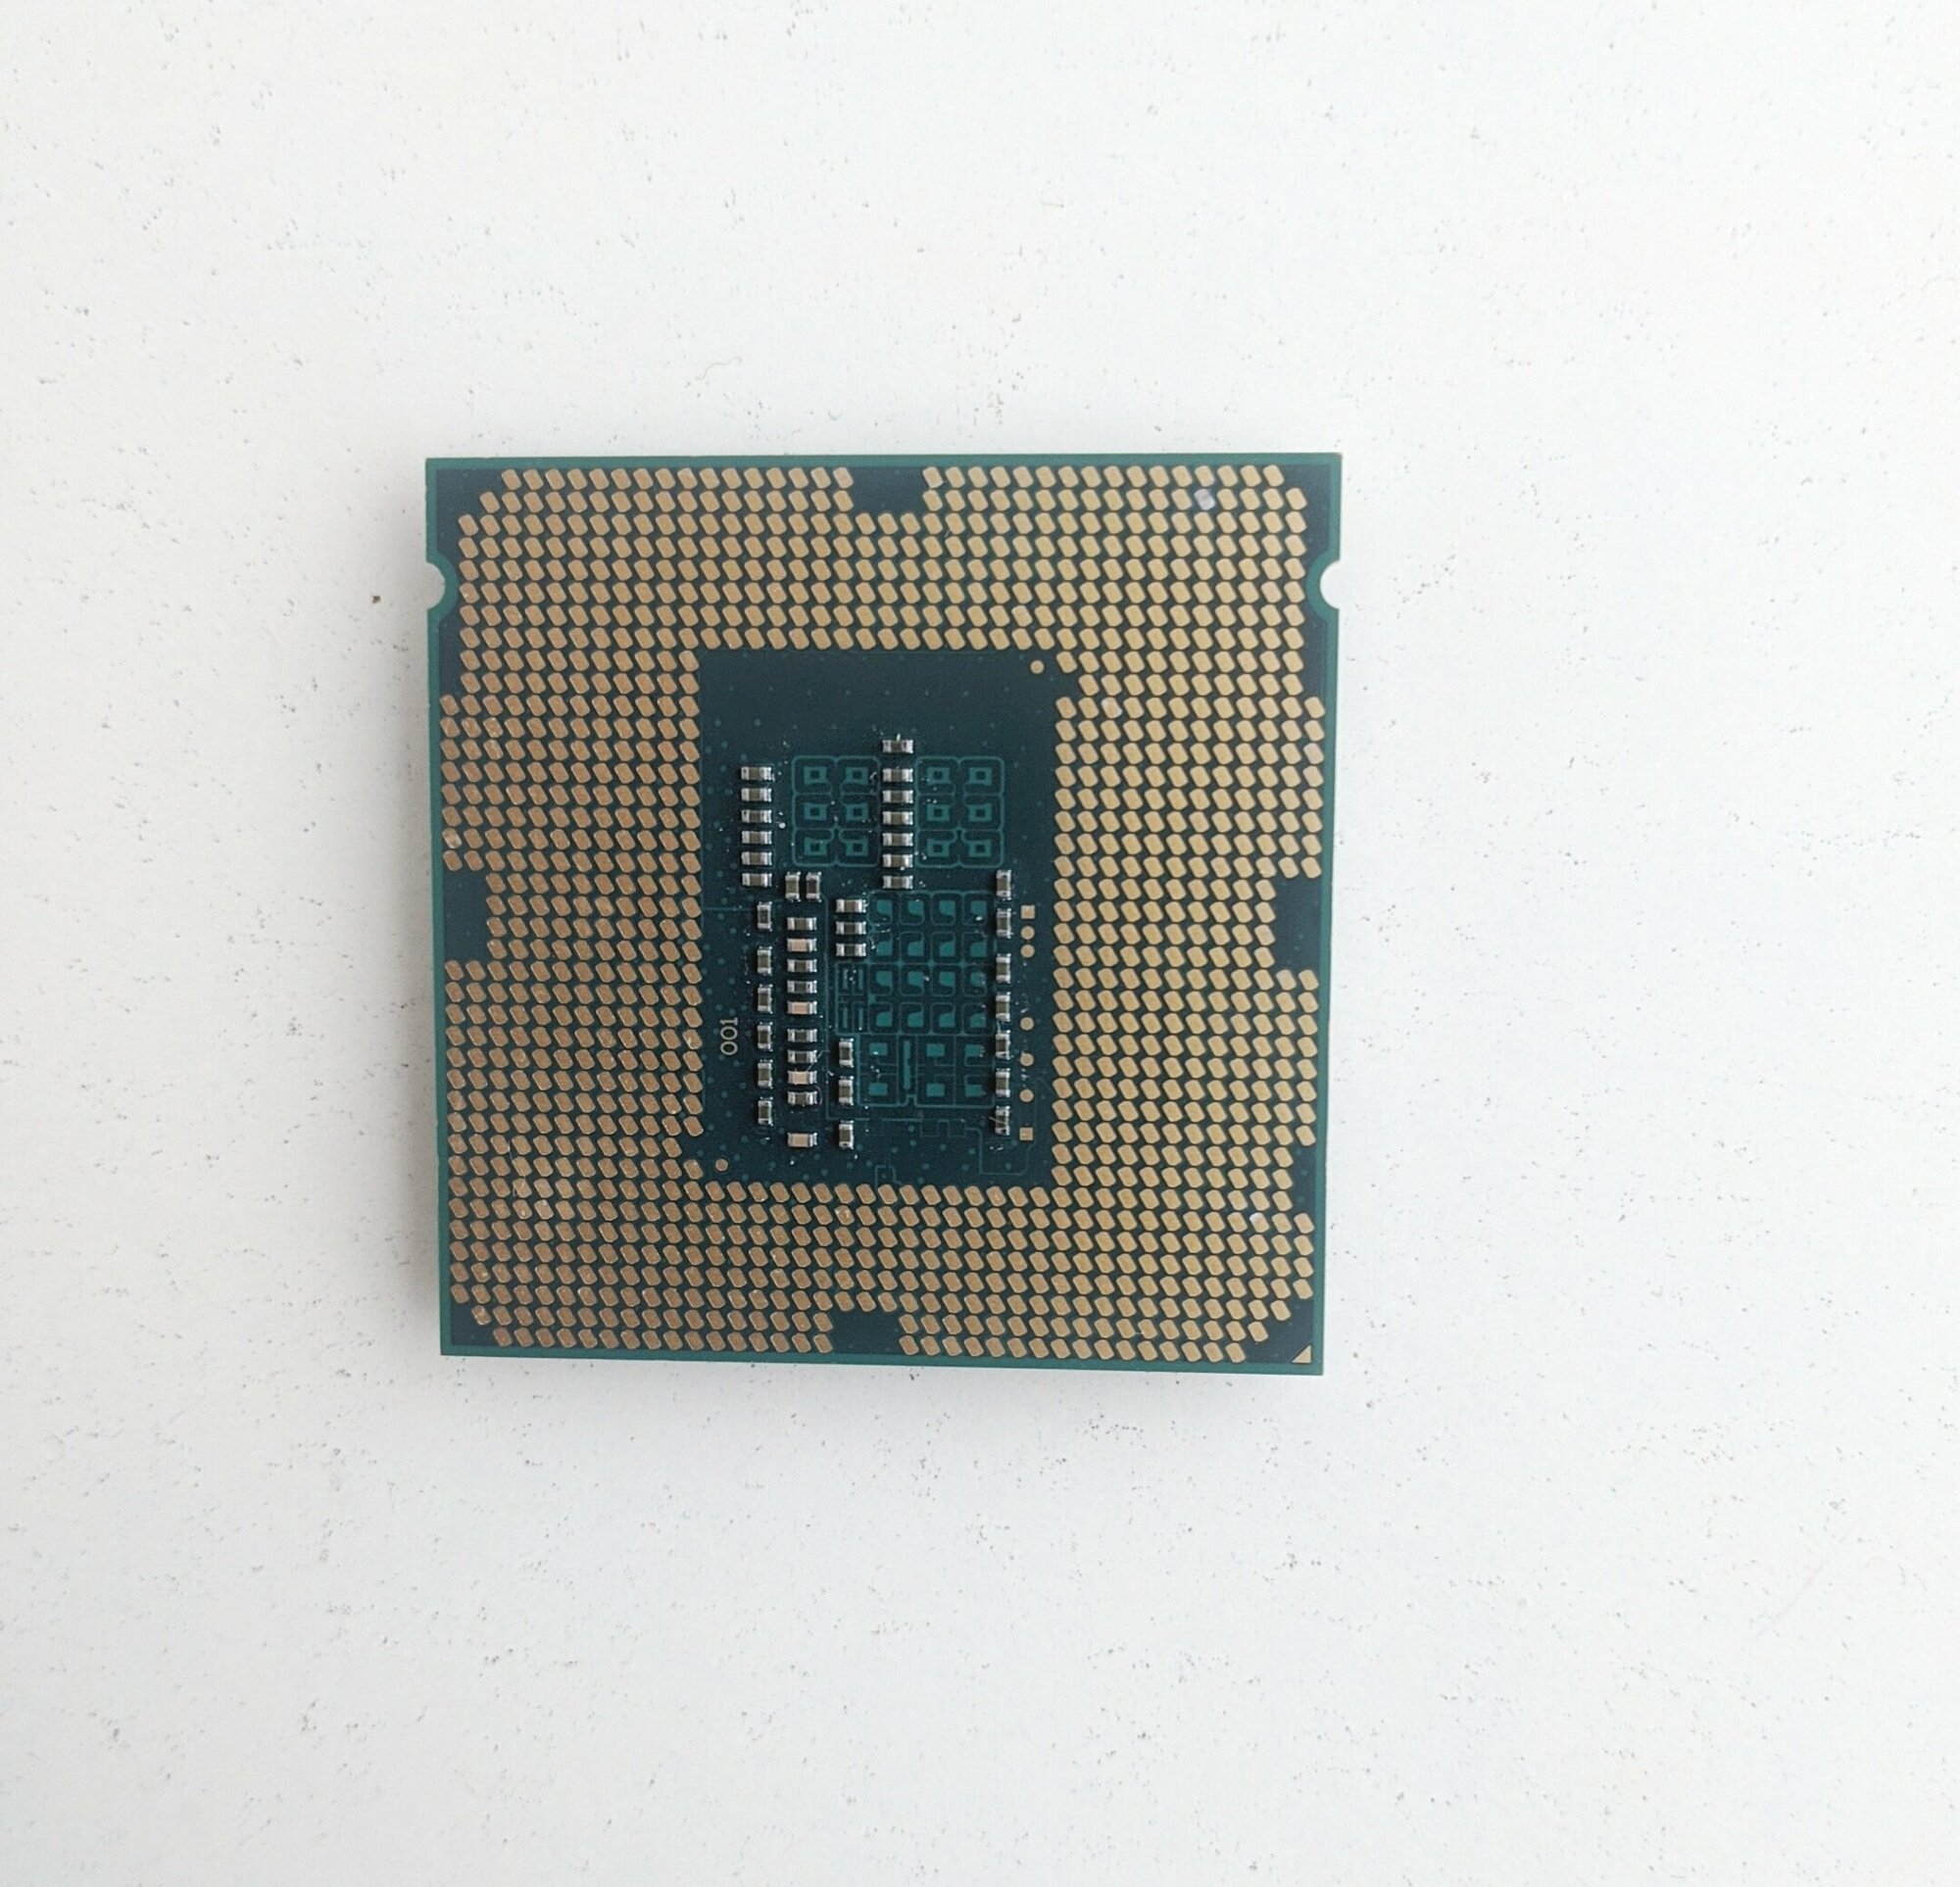 Процессор Intel CM8064601483405 2.7GHz Dual Core Haswell (LGA1150, DMI, L3 2MB, 53W, 1050MHz, 22nm) Tray - фото №4